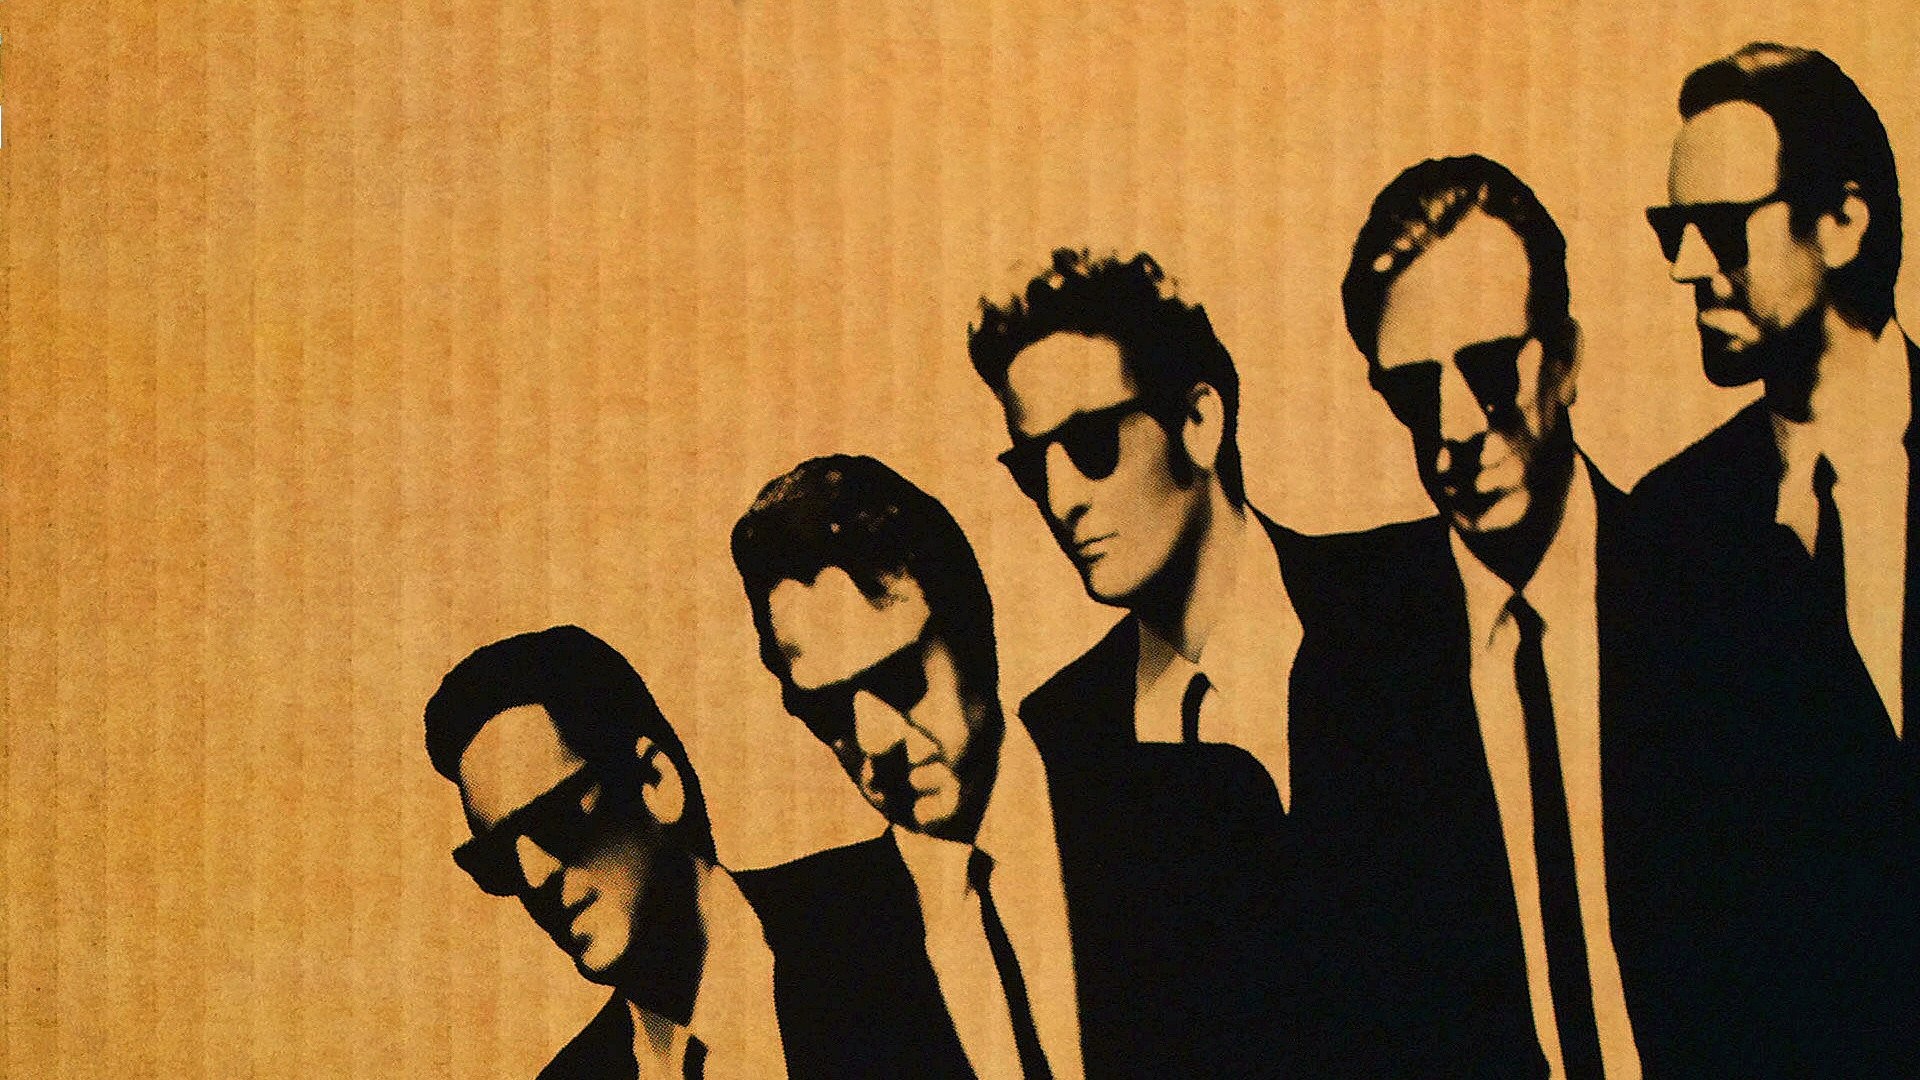 1920x1080 Movies men Reservoir Dogs Quentin Tarantino wallpaper |  | 237534  | WallpaperUP